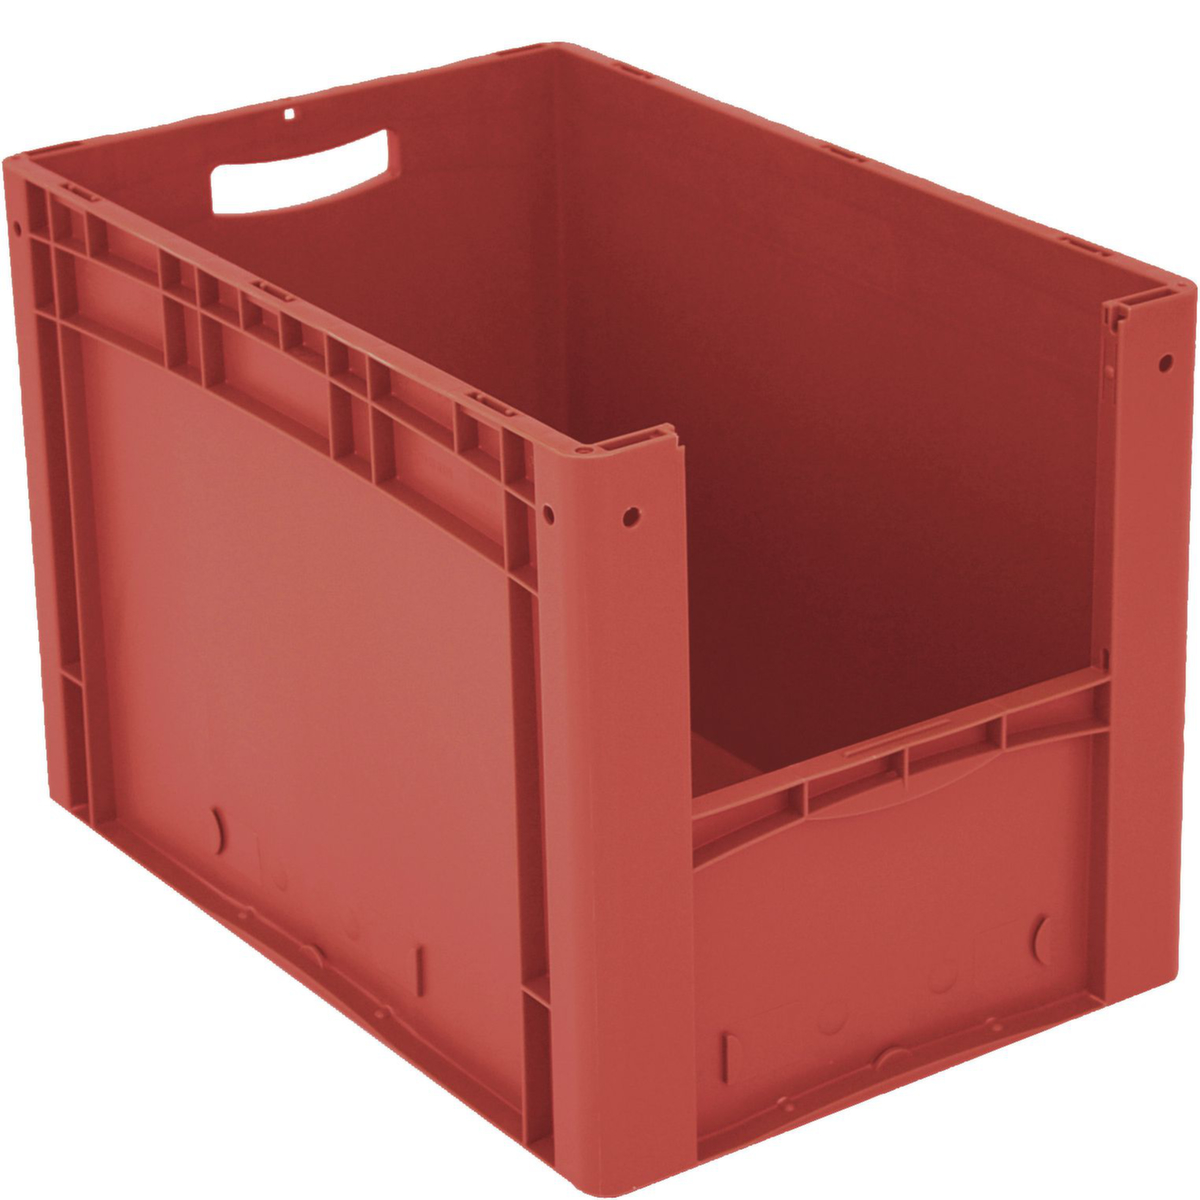 Euronorm zichtbare opslagcontainer met toegangsopening, rood, HxLxB 420x600x400 mm  ZOOM